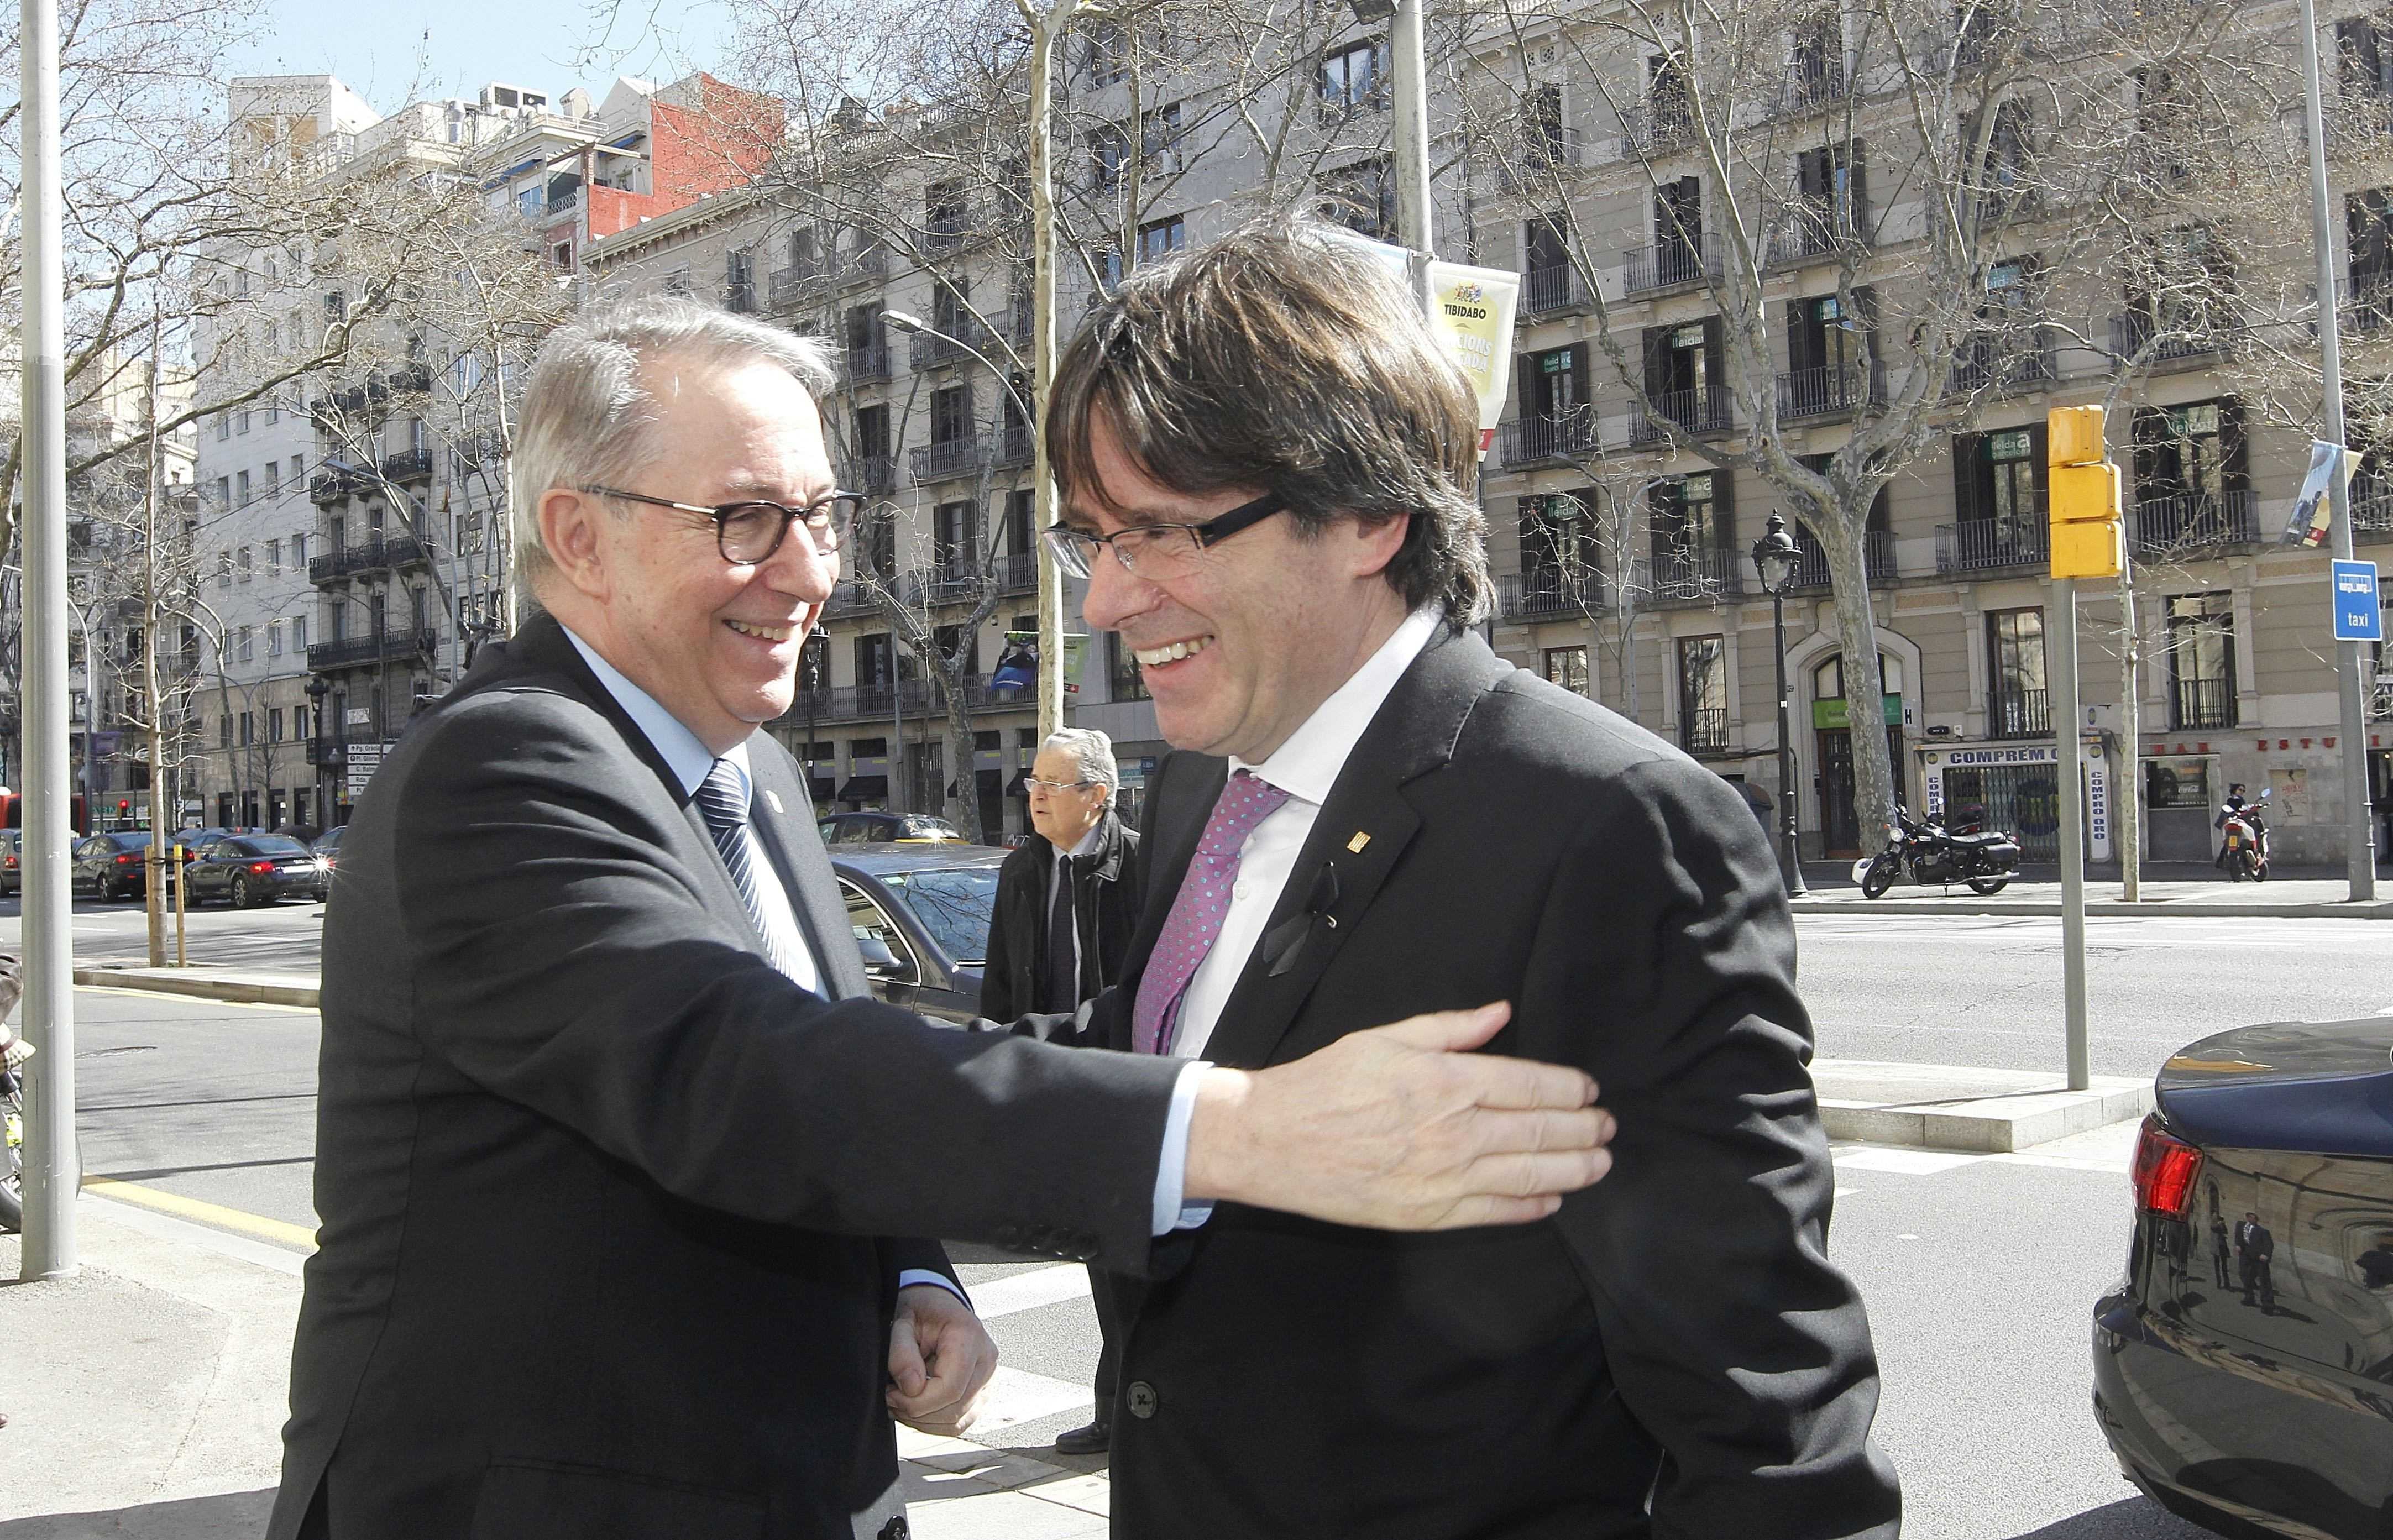 Puigdemont avisa que ni repressió ni violència poden evitar el desig de la majoria